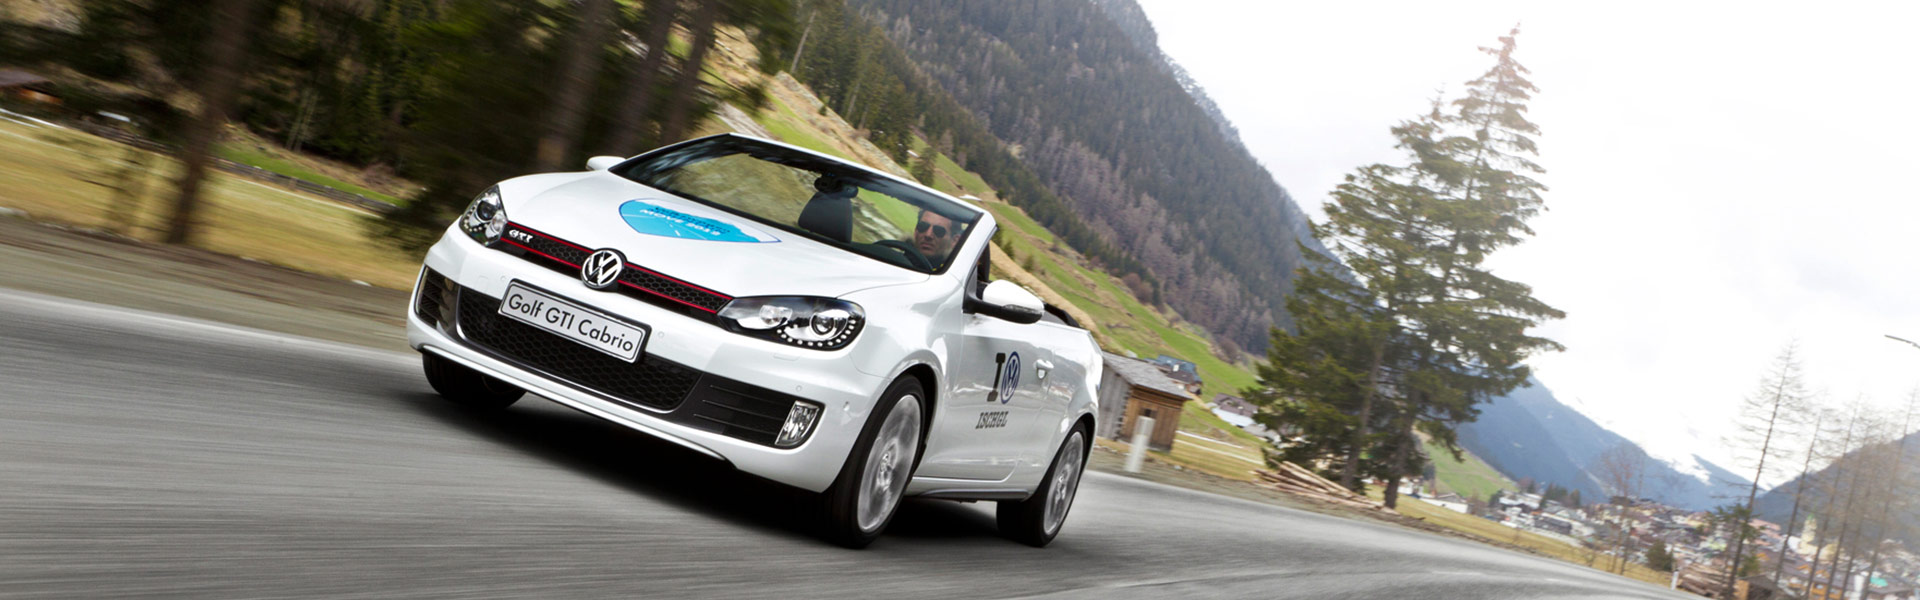 Volkswagen VW Cron&Crown Mountain Move 2013 Eventformat Passat Alltrack Lifestyle Marke Erlebnis Fahrt I VG Ischgl